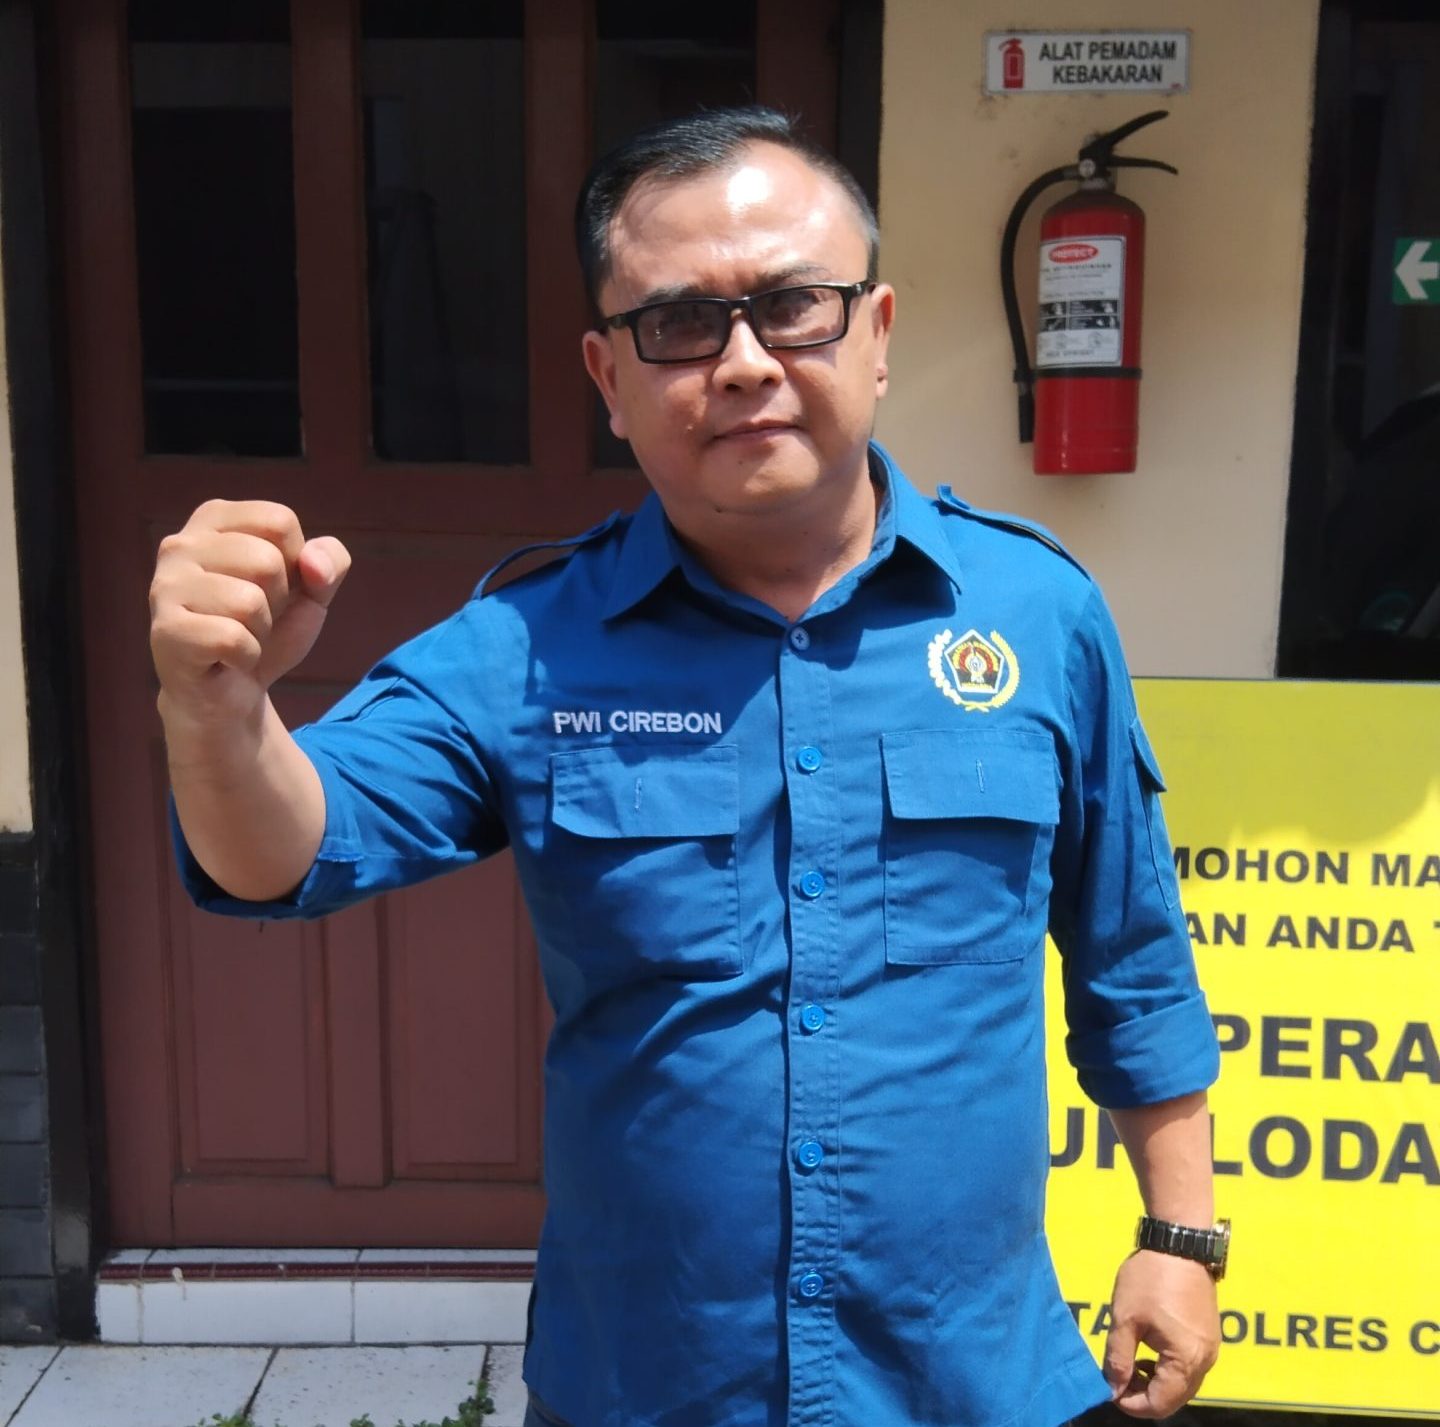 Ketua PWI Cirebon Dimintai Keterangan Oleh Polisi, Terkait Dugaan Penghinaan Profesi Wartawan